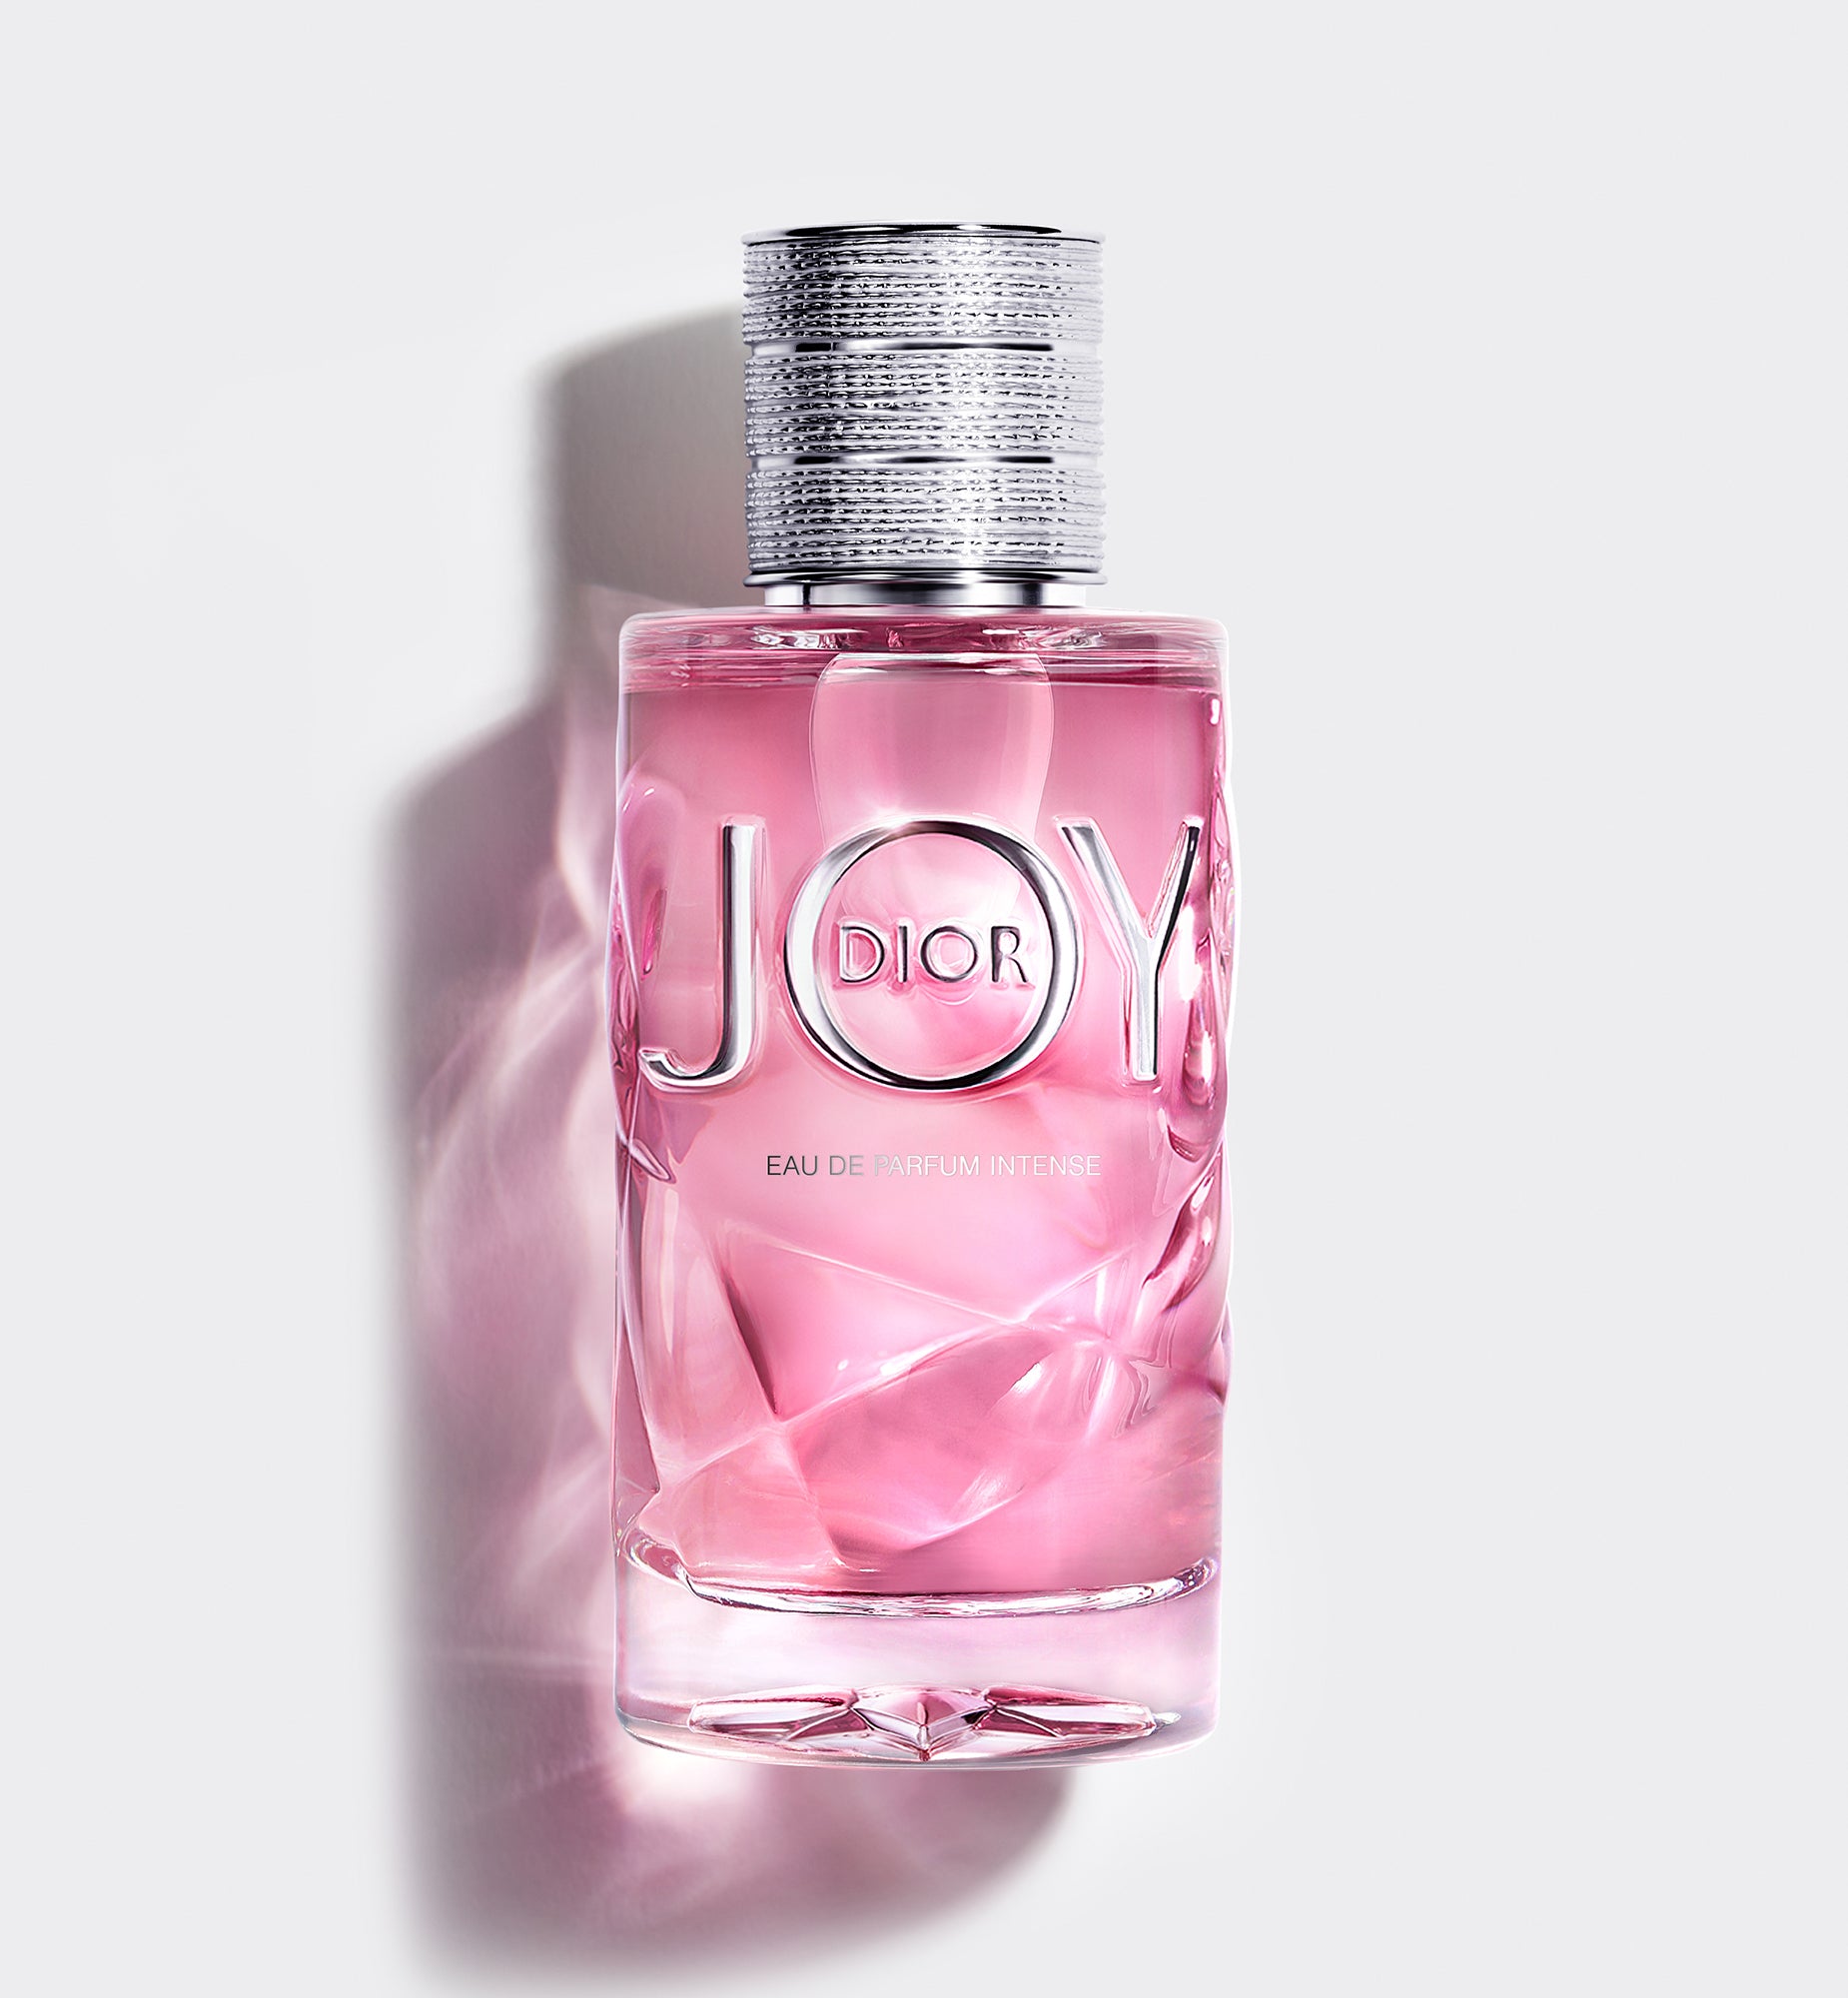 น้ำหอมกลิ่นดอกไม้ JOY BY DIOR EAU DE FARFUM INTENSE—Eau de parfum intense—น้ำหอมกลิ่นดอกไม้เข้มข้น กลิ่นหอมหวานเย้ายวน ให้ความสดชื่น ติดทนนาน